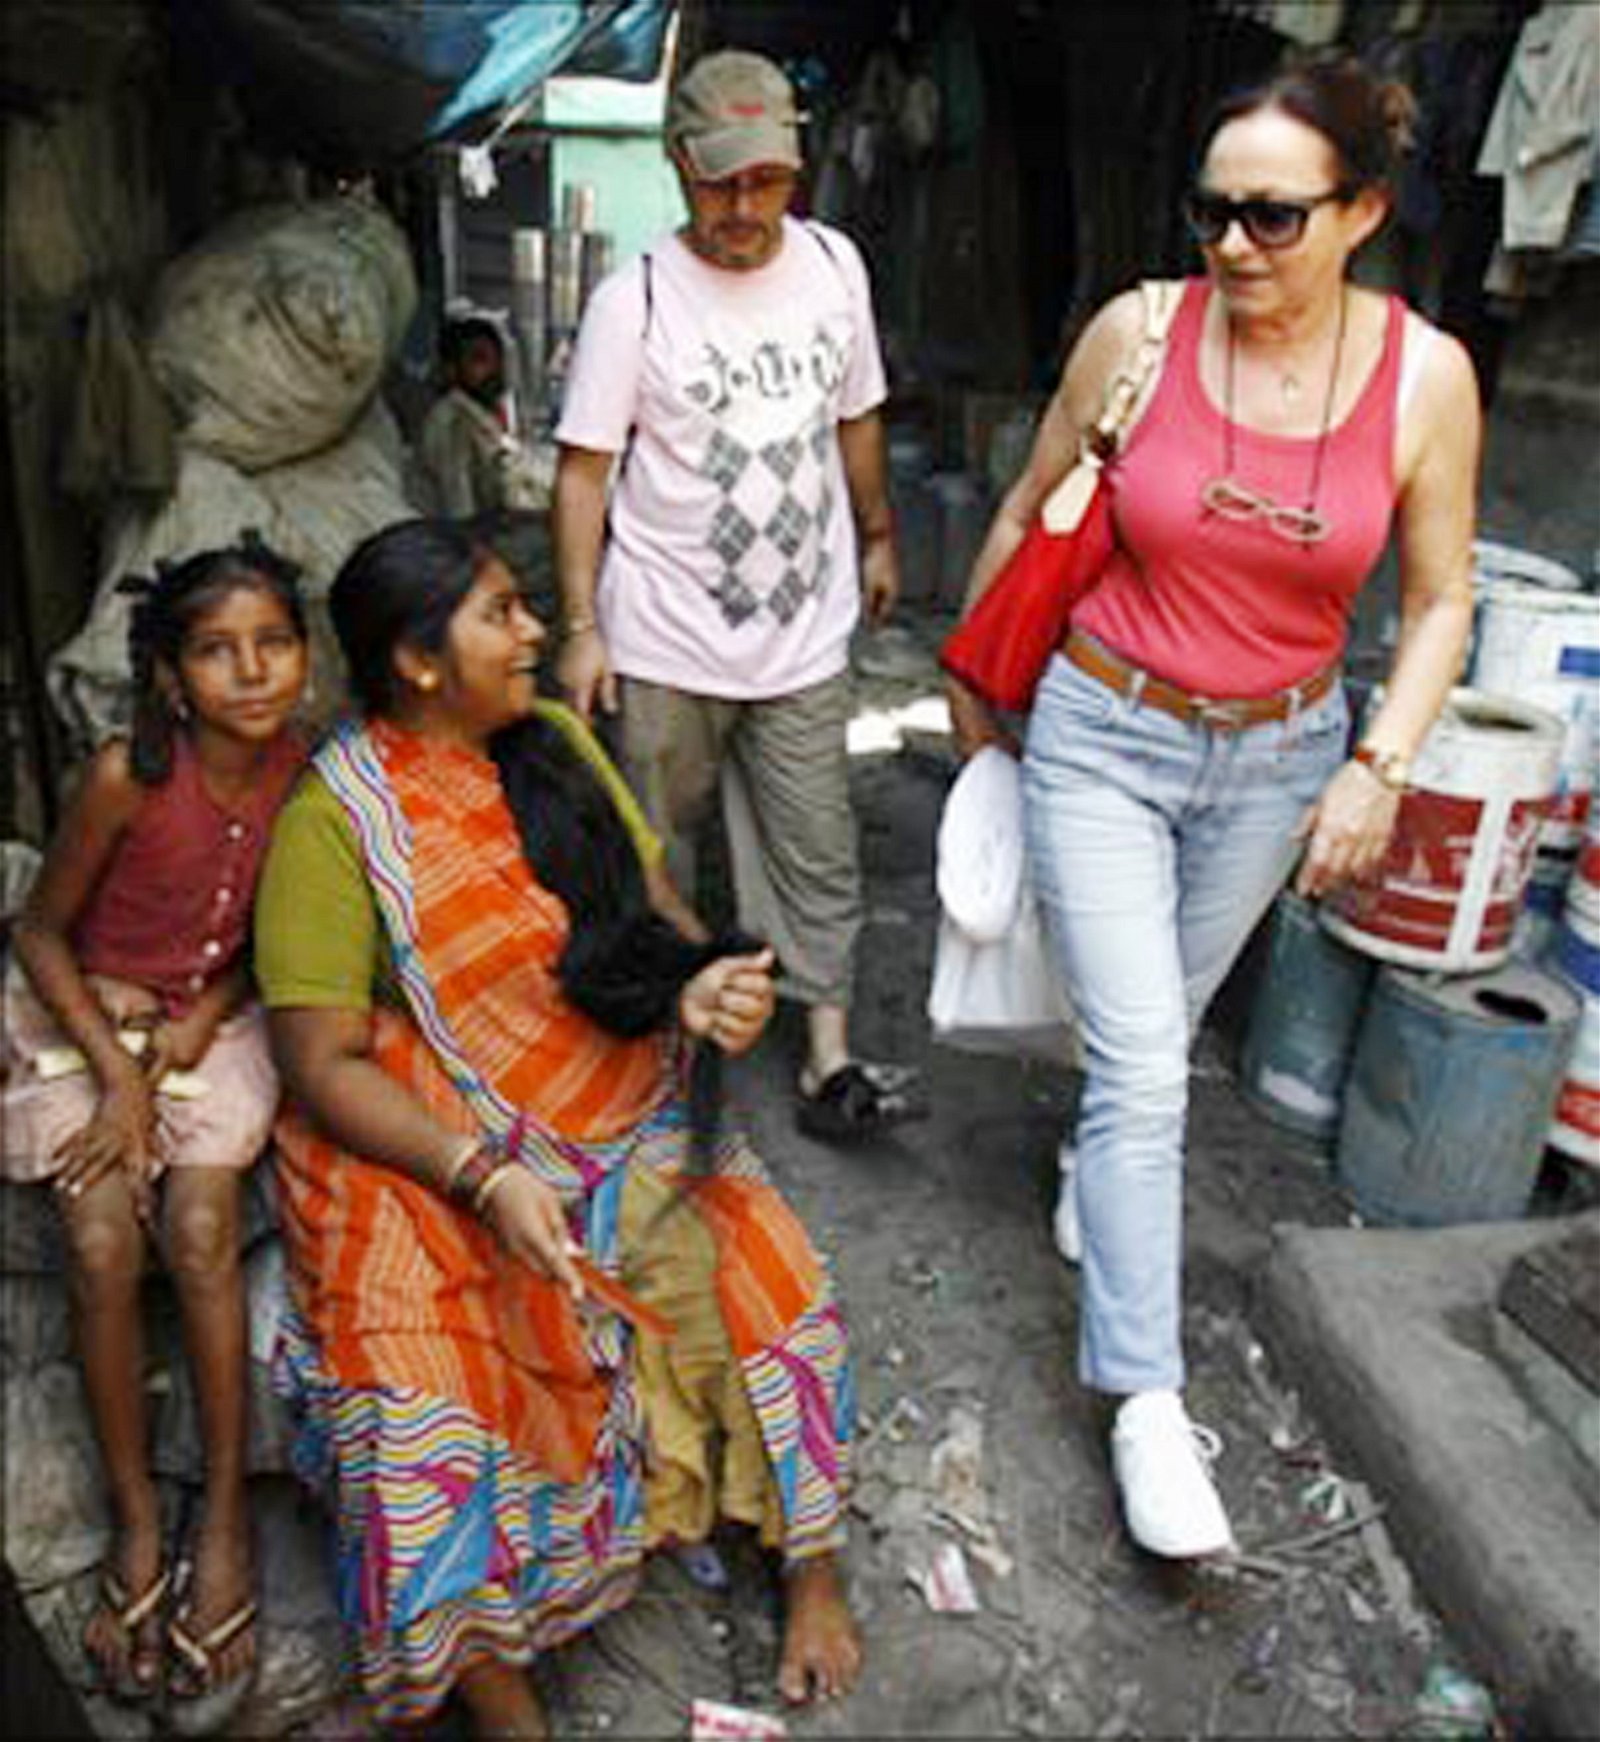 一名西方旅客在达拉维平民窟中行走，经过一名坐在小巷梳头的当地居民。随著著名电影《贫民百万富翁》于2008年上映，逐渐有游客踏足达拉维，为当地的旅游业带来商机。